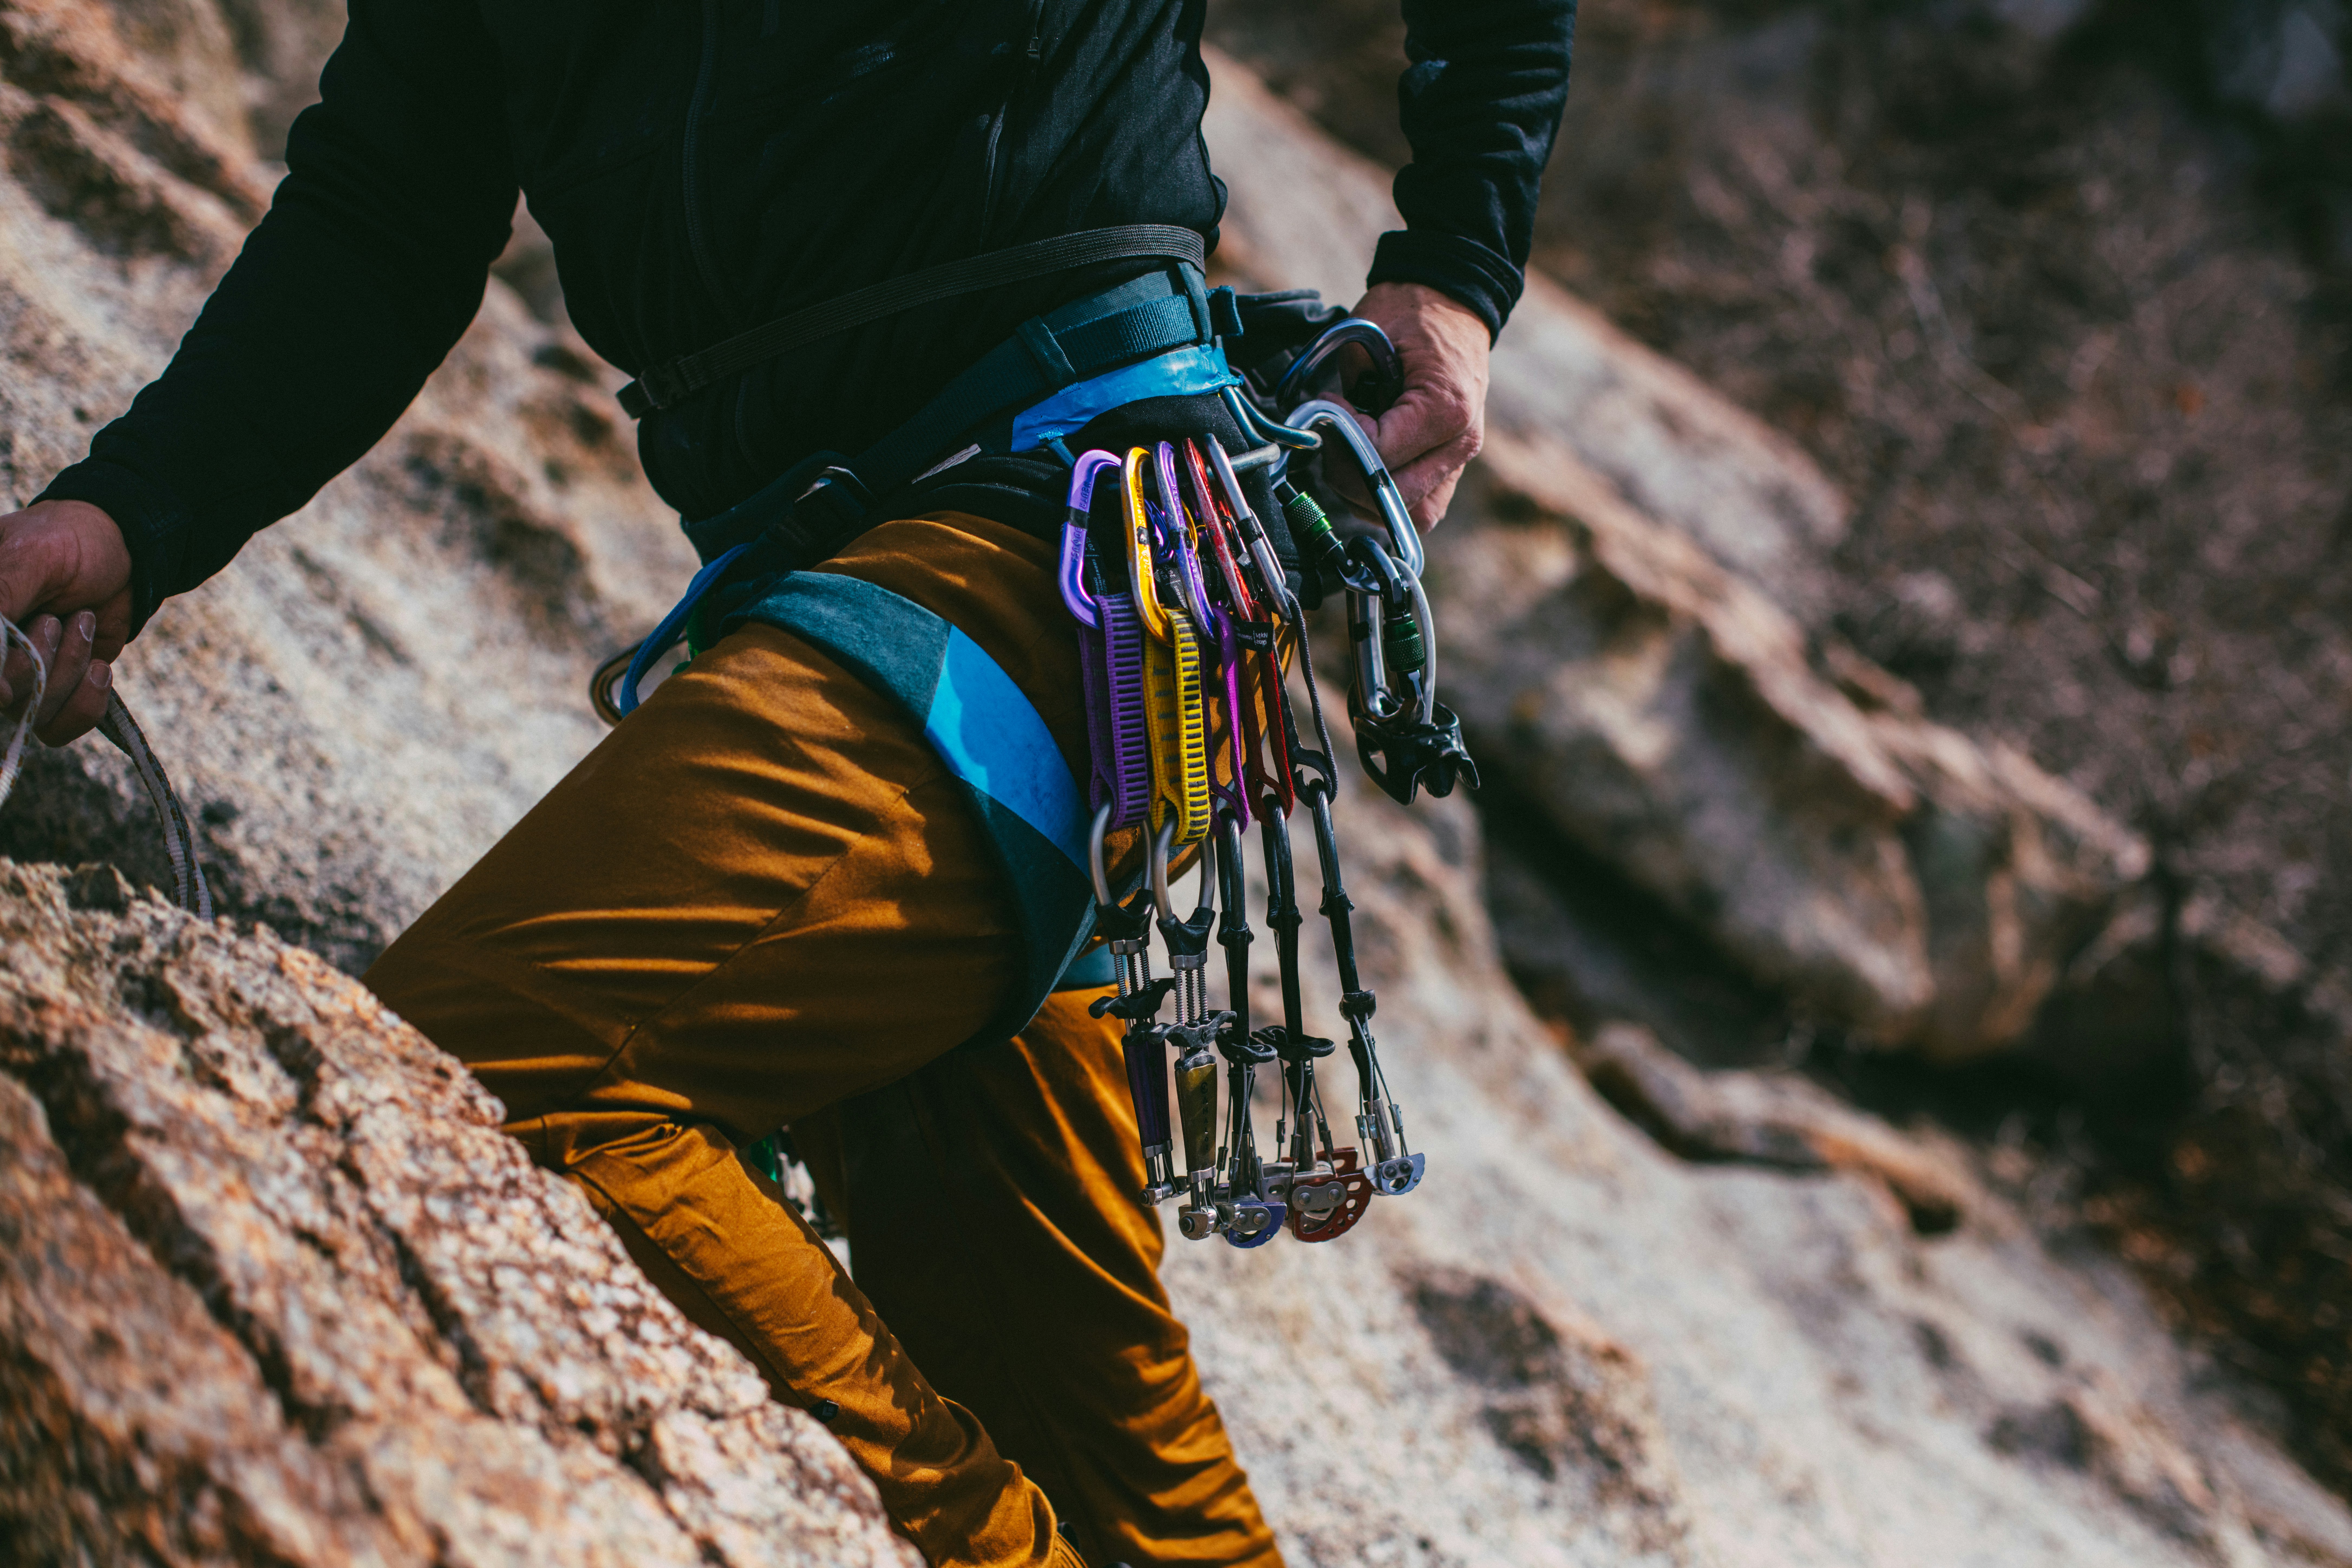 découvrez notre sélection d'équipement de escalade pour débutants et experts. trouvez tout ce dont vous avez besoin pour votre prochaine aventure d'escalade.